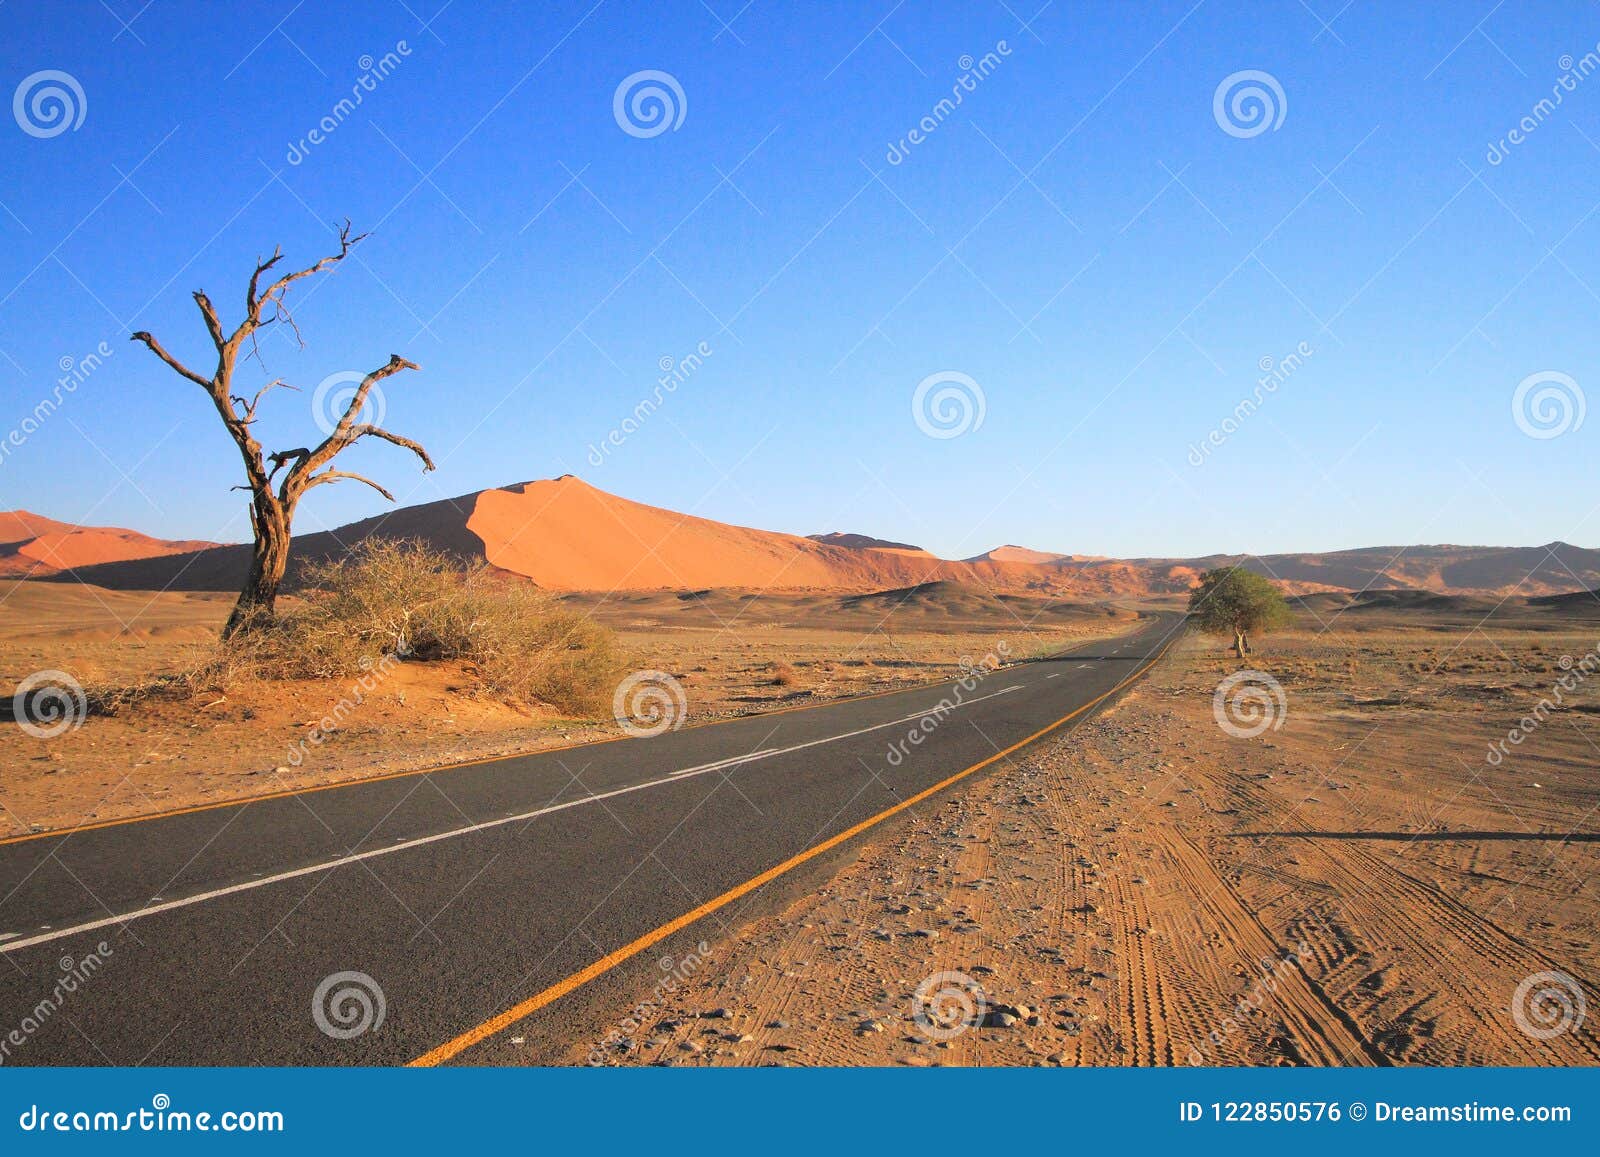 Namibwoestijn: Vroege ochtend in Sossusvlei. De vele gezichten van Sossusvlei; allen zijn prachtig om te zien Van de goede geteerde weg, door de dode boom, aan scherp - geschetste duinen in de afstand: allen zijn een genoegen aan behold En toch: dit is een woestijn, genadeloos op de unwary reiziger Iedereen wie uit in de woestijn wandelen moet een goede levering van water levend nemen, om te blijven als zij zouden moeten verloren gebeuren te worden